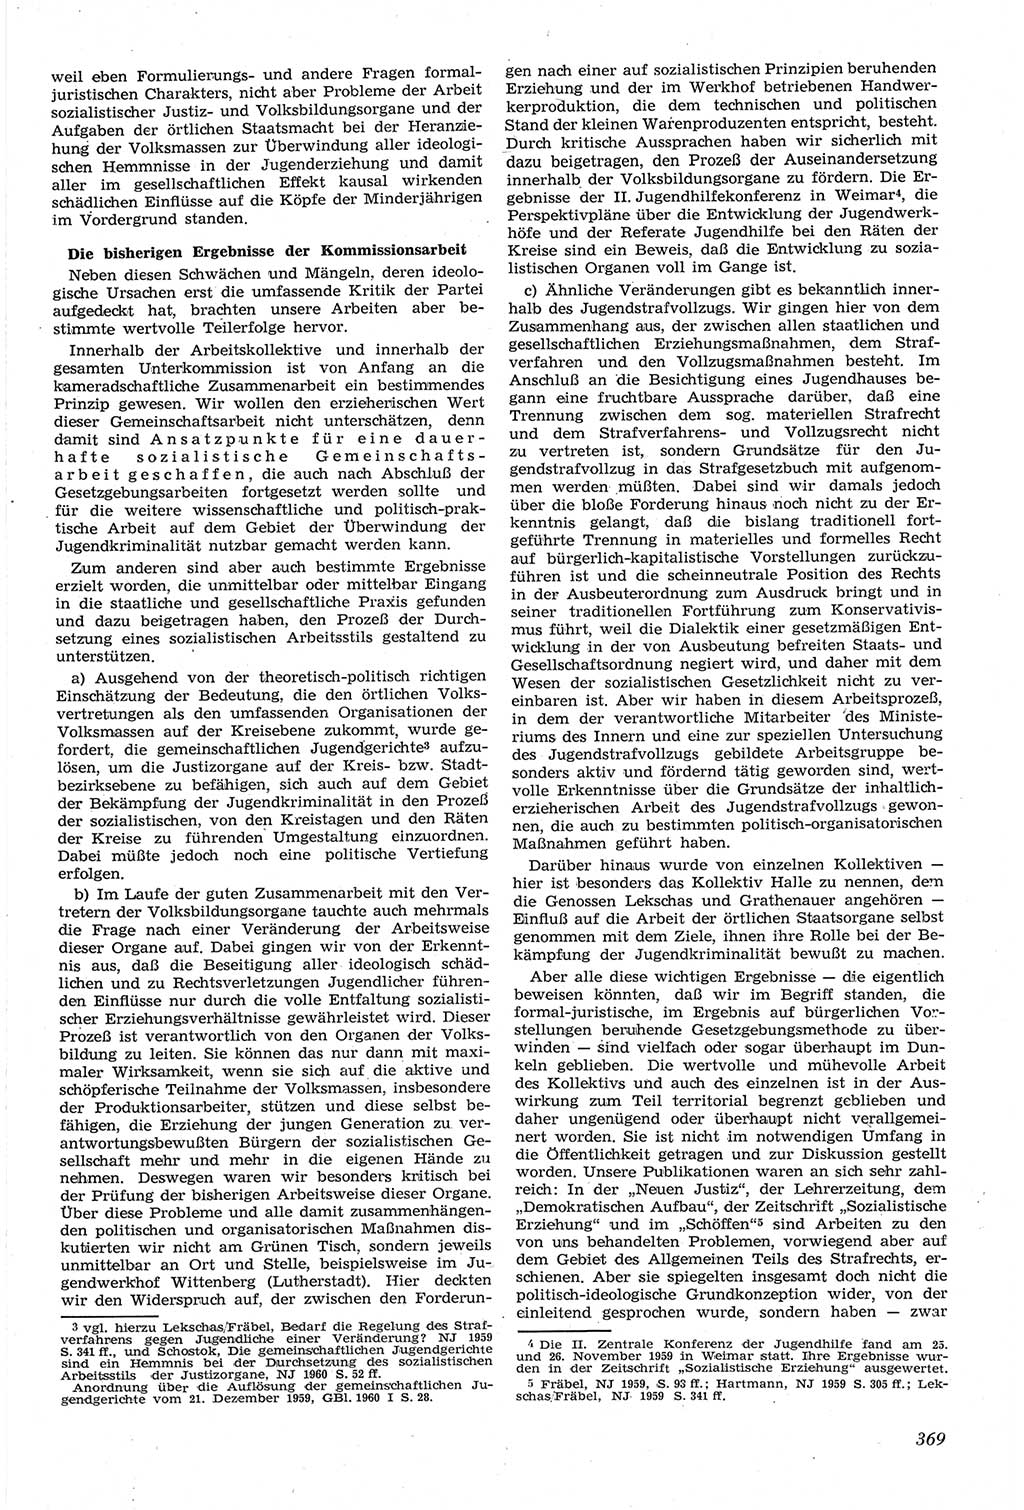 Neue Justiz (NJ), Zeitschrift für Recht und Rechtswissenschaft [Deutsche Demokratische Republik (DDR)], 14. Jahrgang 1960, Seite 369 (NJ DDR 1960, S. 369)